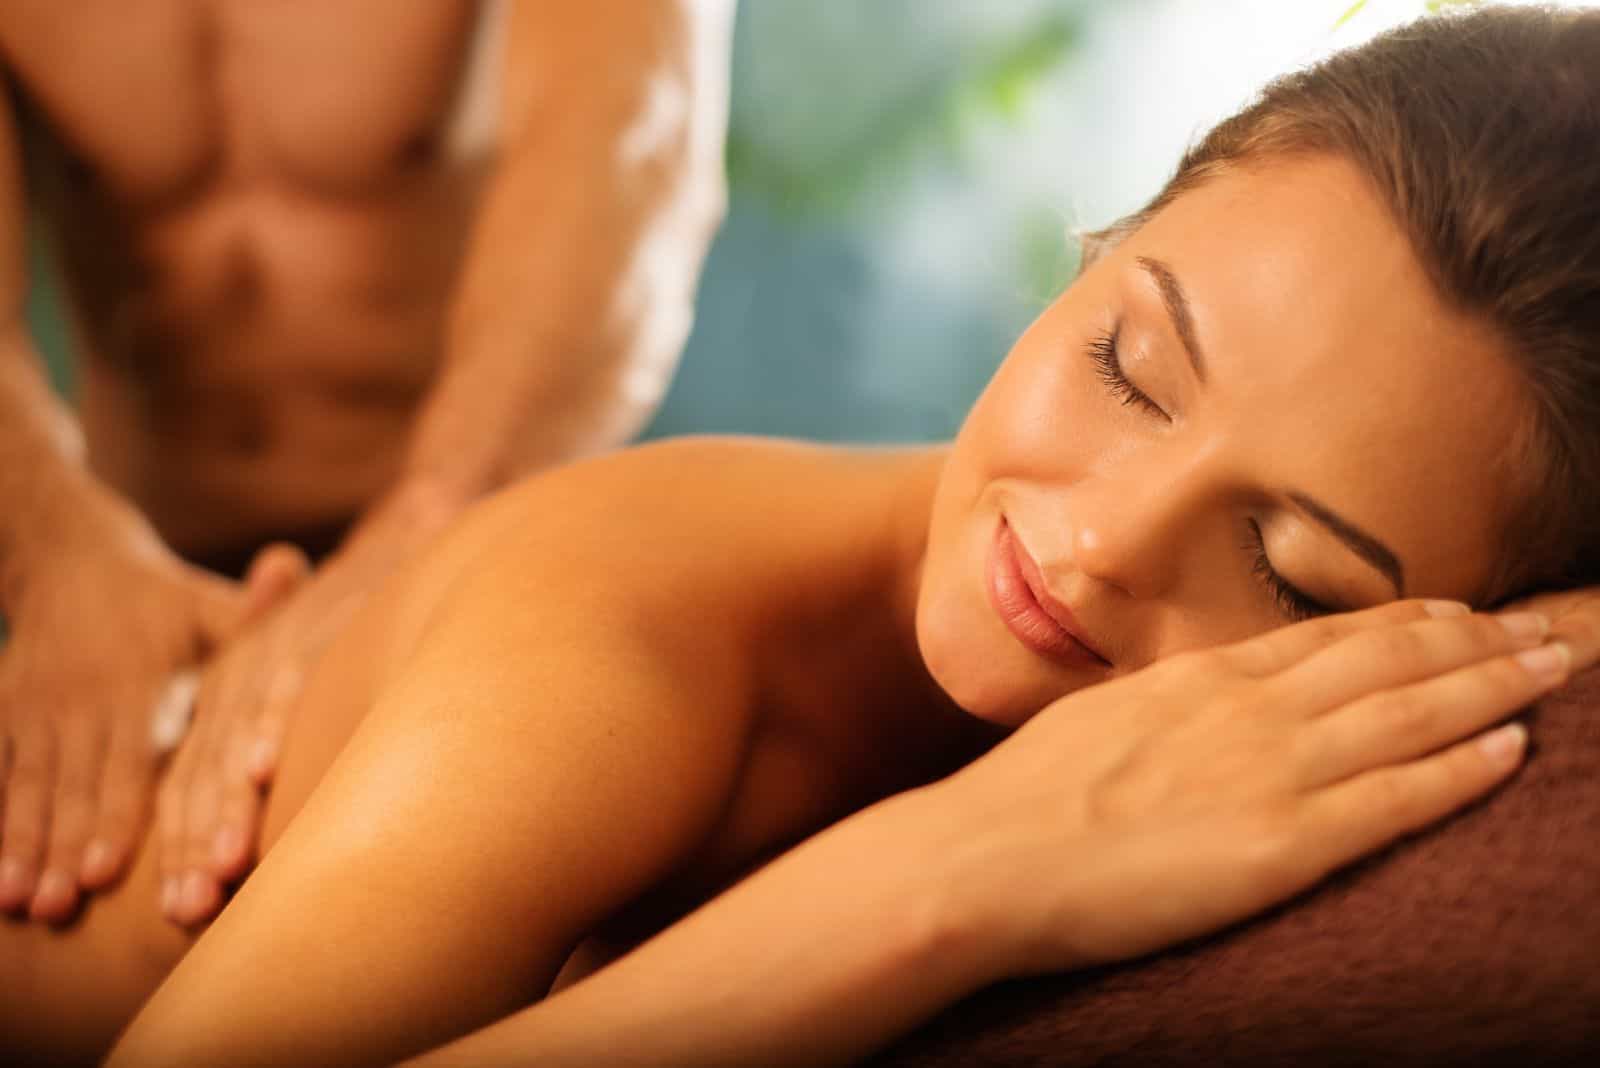 a man massages a woman